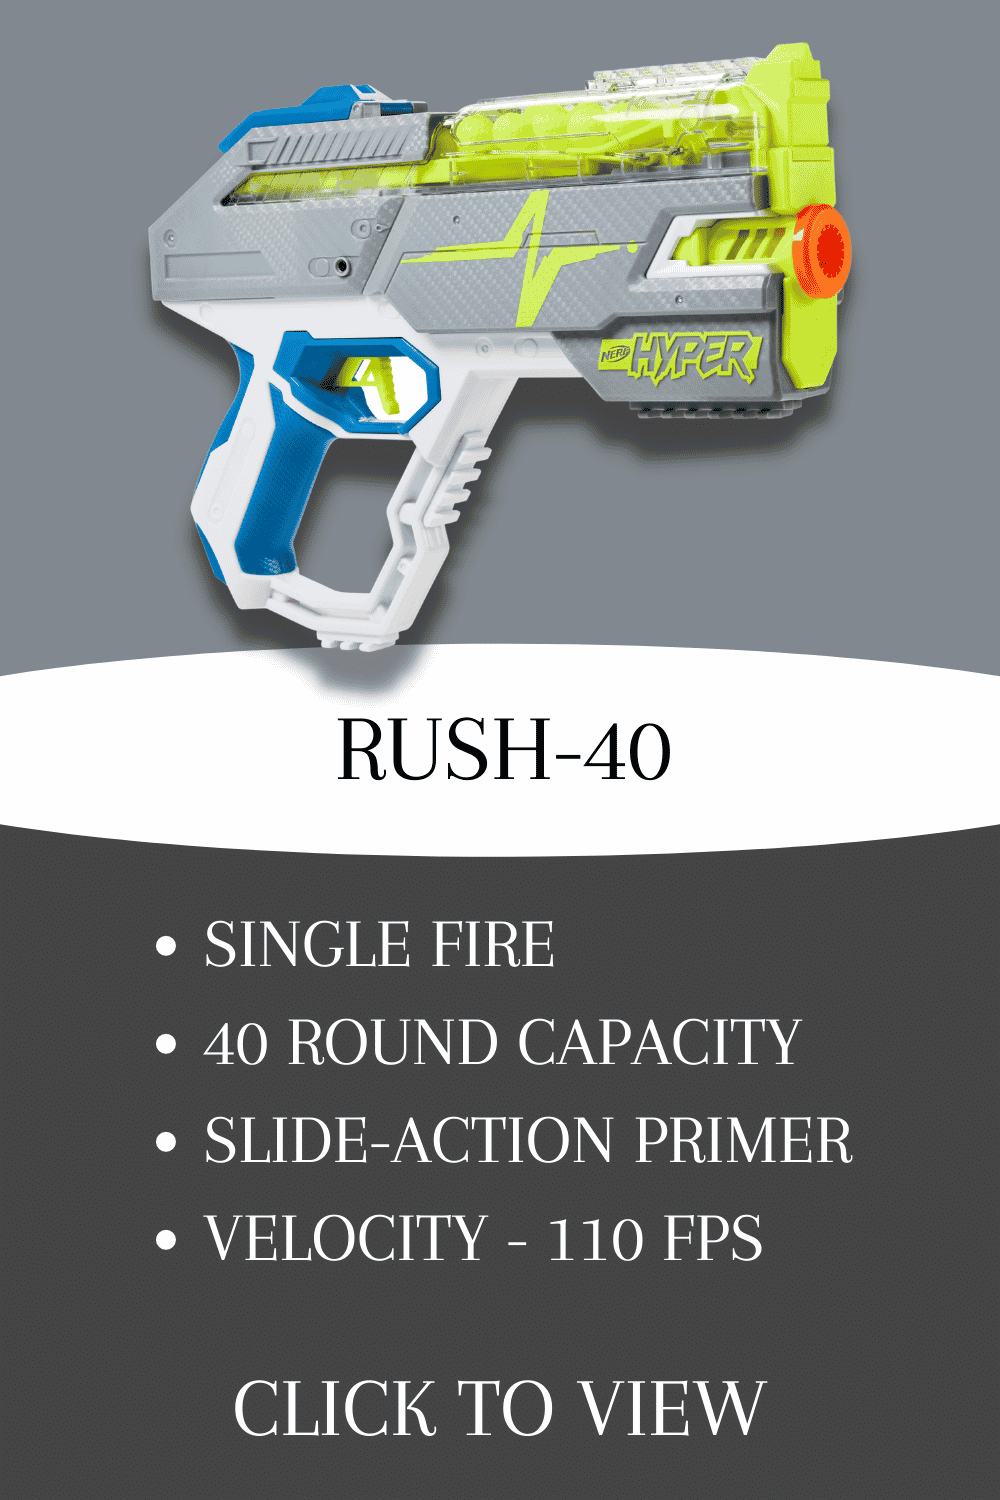 NERF hyper rush-40